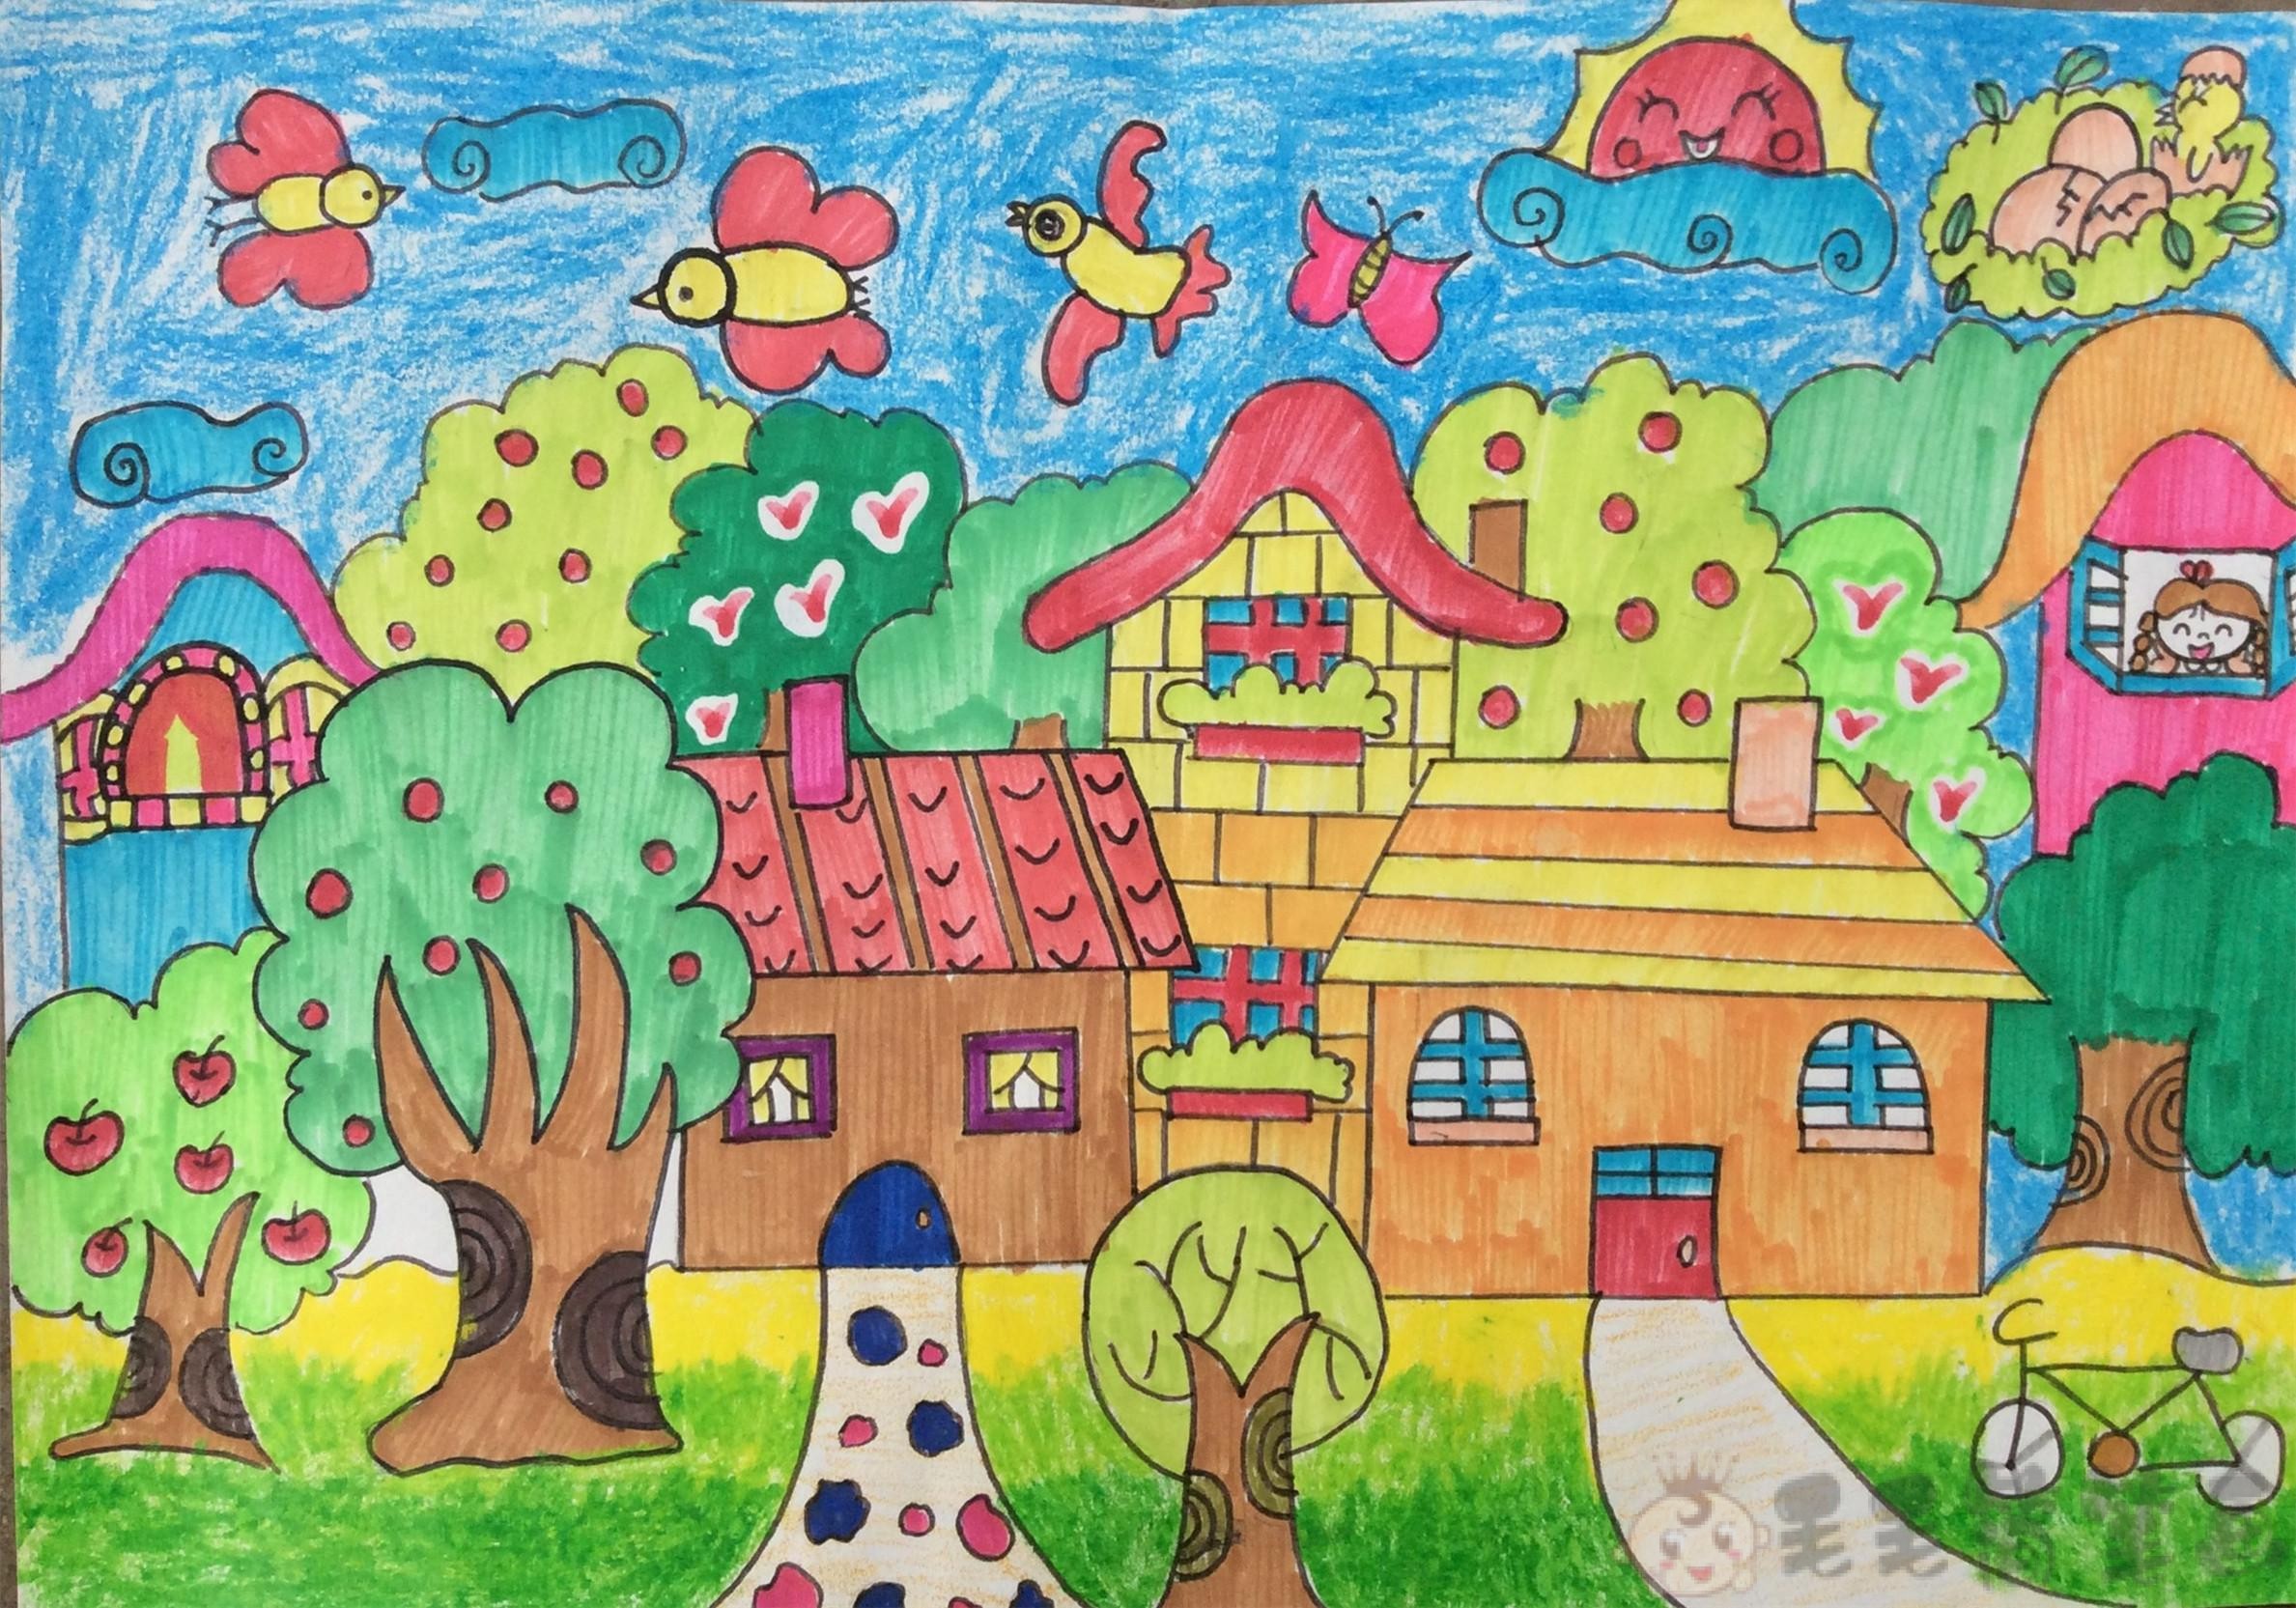 儿童画秋天的图画作品 - 儿童创意绘画大全_创意画大全图片_可爱儿童创意画教程 - 咿咿呀呀儿童手工网